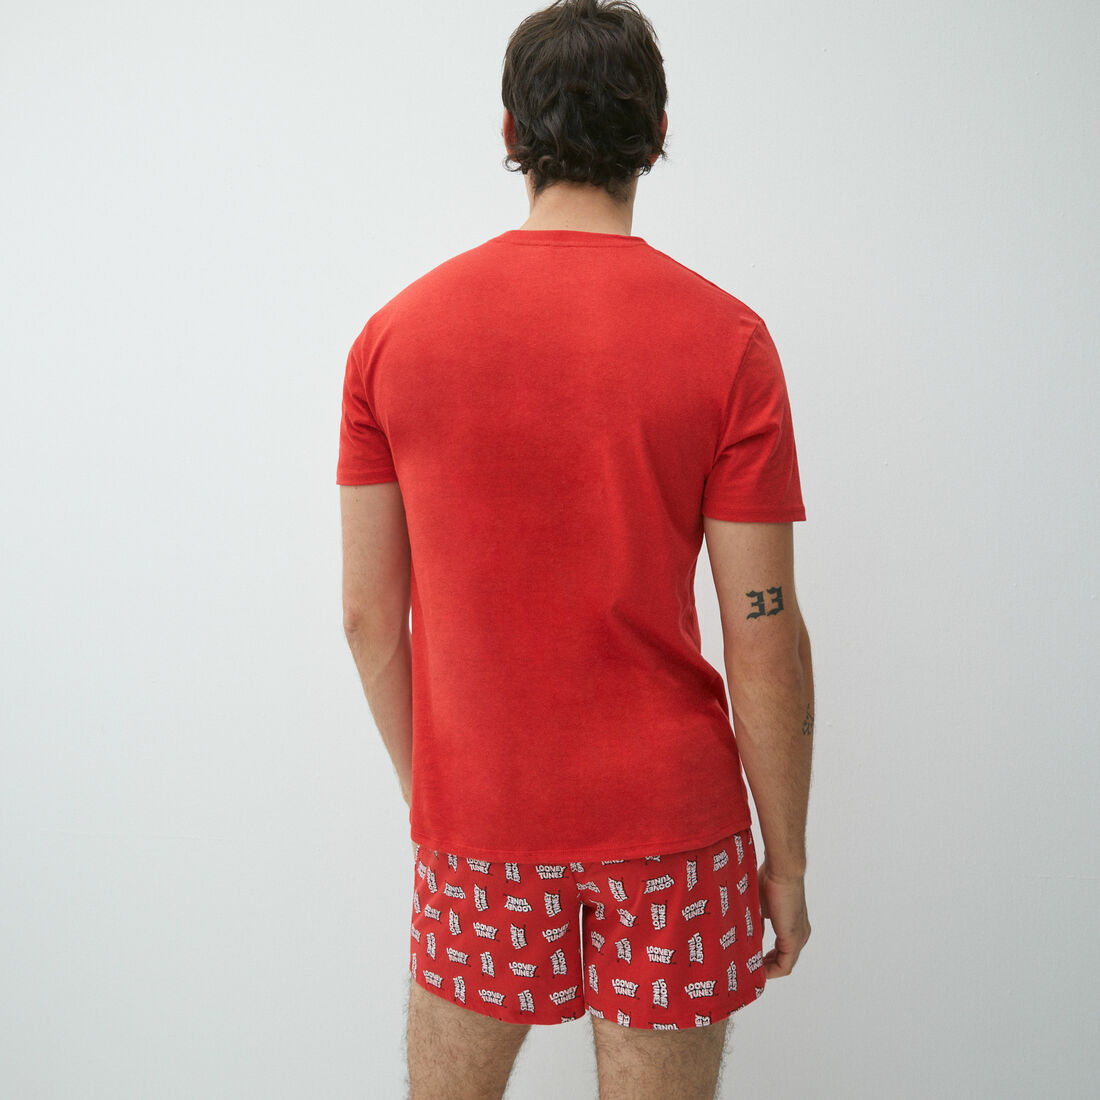 Mario t-shirt and boxer shorts set;